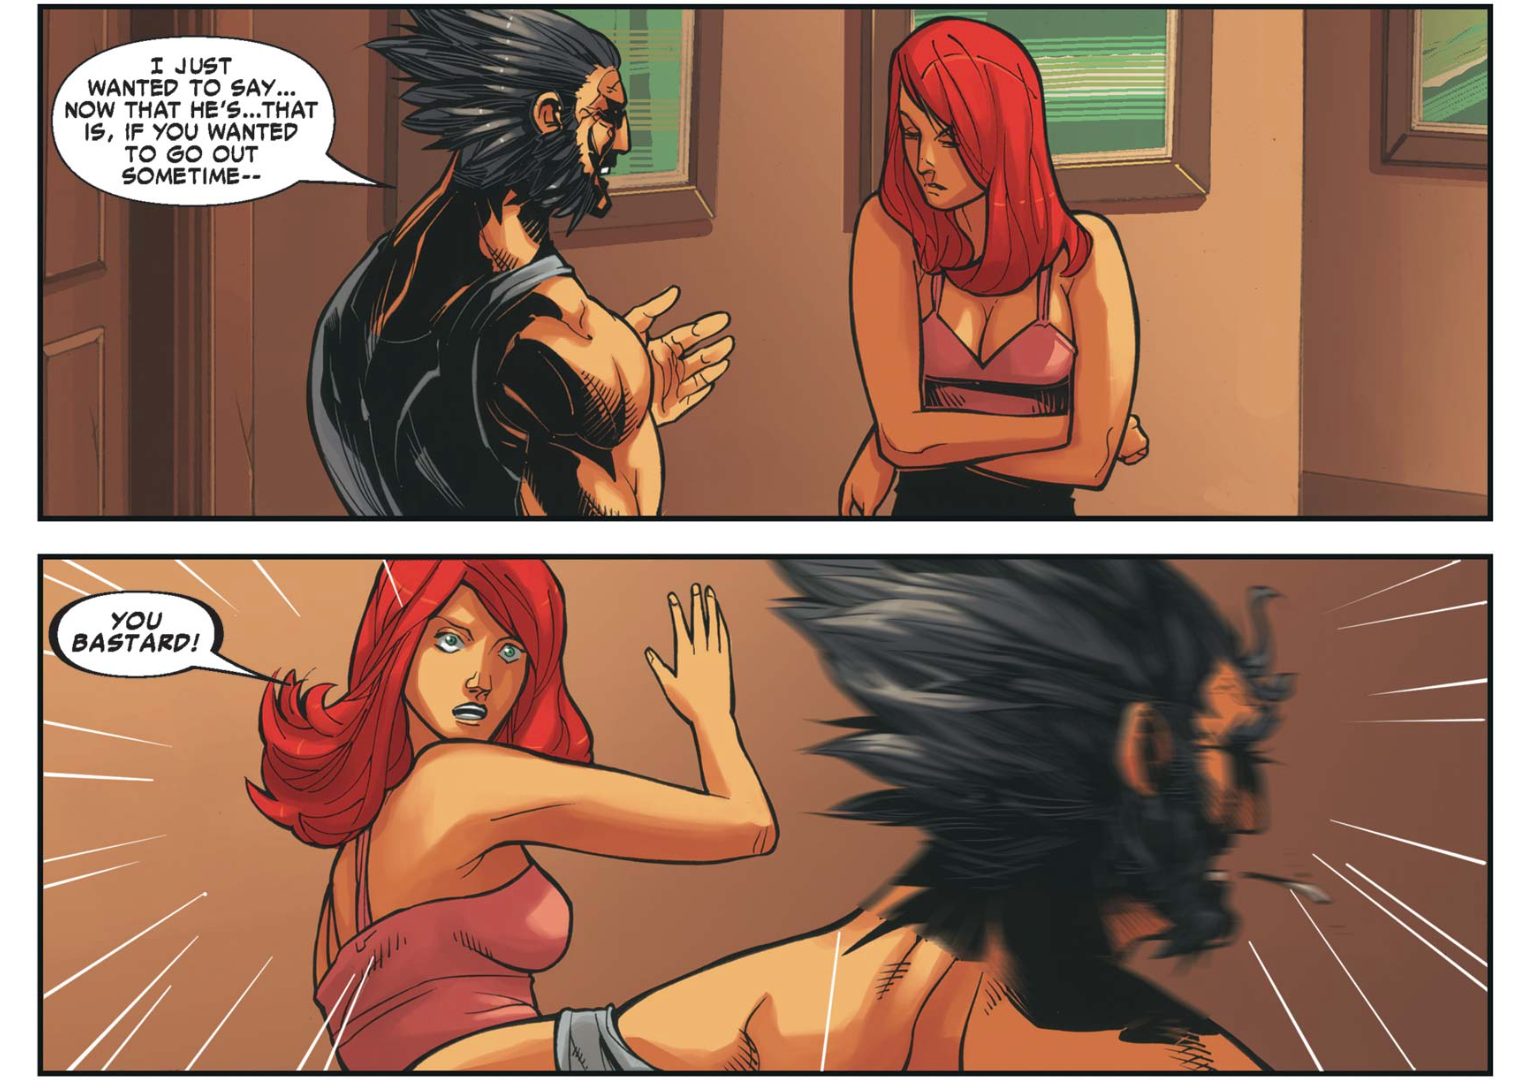 Wolverine pergunta a Mary Jane se ela quer sair algum dia.  Mary Jane dá um tapa nele e o chama de bastardo.